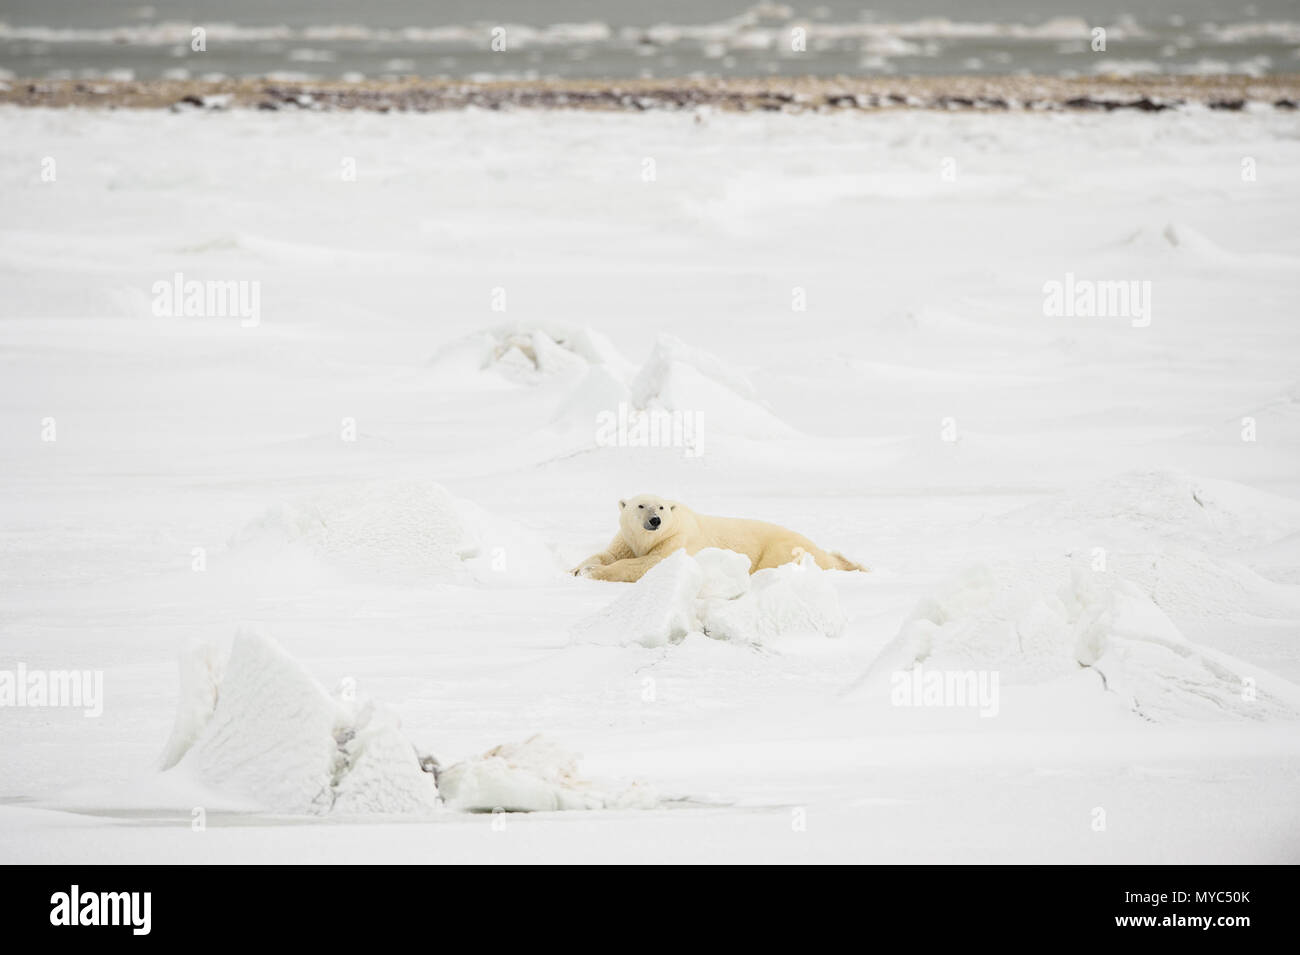 L'ours polaire (Ursus maritimus) Wandering côte de la Baie d'Hudson en attente de la glace de mer, le parc national Wapusk, Cape Churchill, Manitoba, Canada Banque D'Images